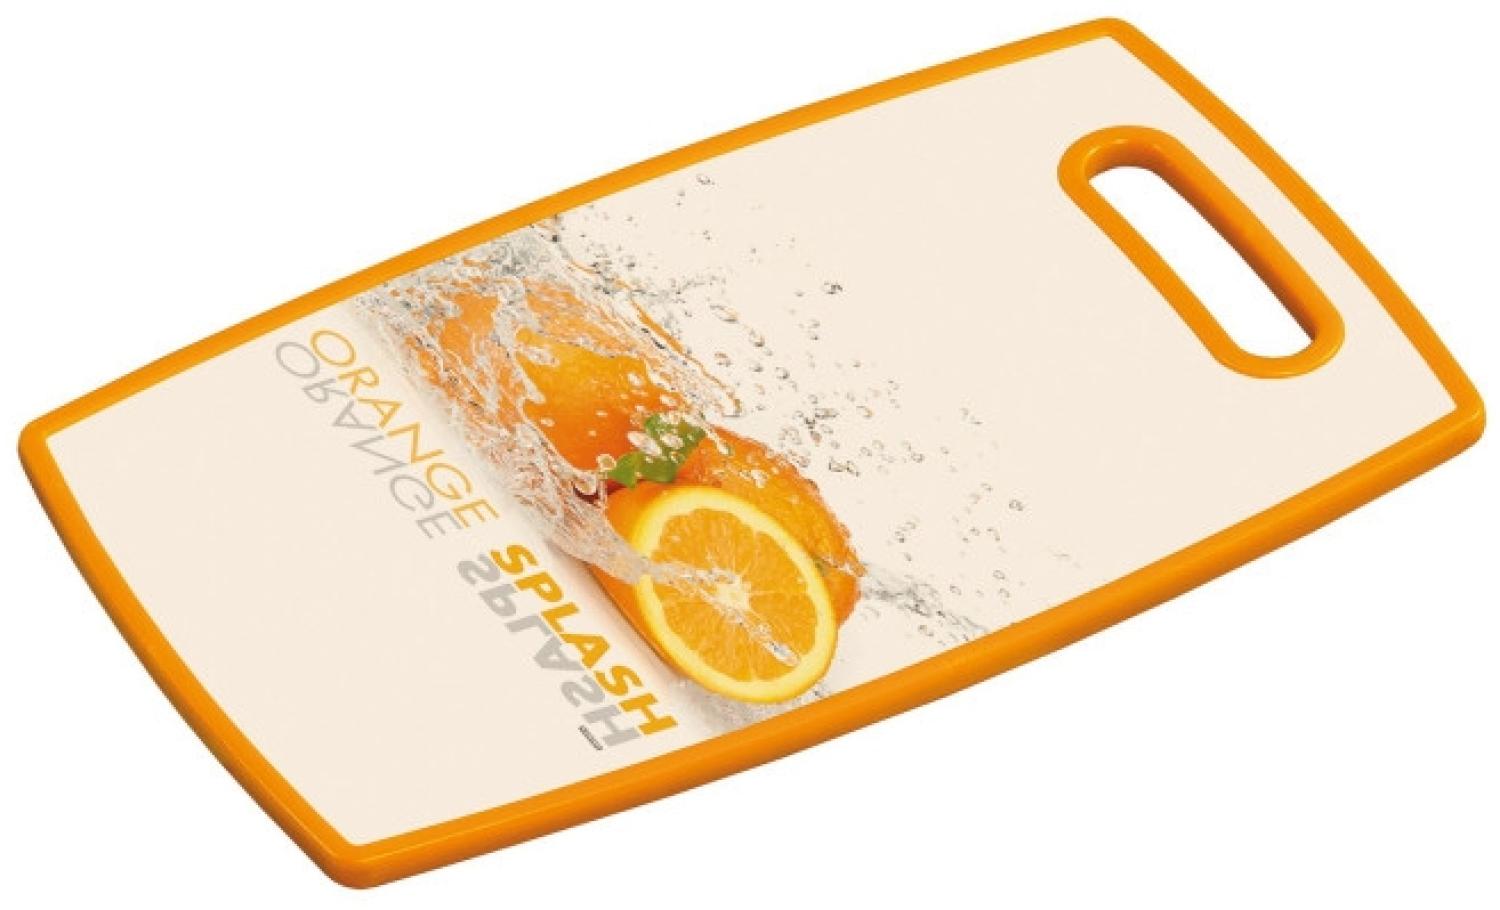 Kesper Schneid-& Servierbrett, Küchenbrett, Motiv: Orange Splash, aus Kunststoff, Maße: ca. 370 x 230 x 12 mm Bild 1